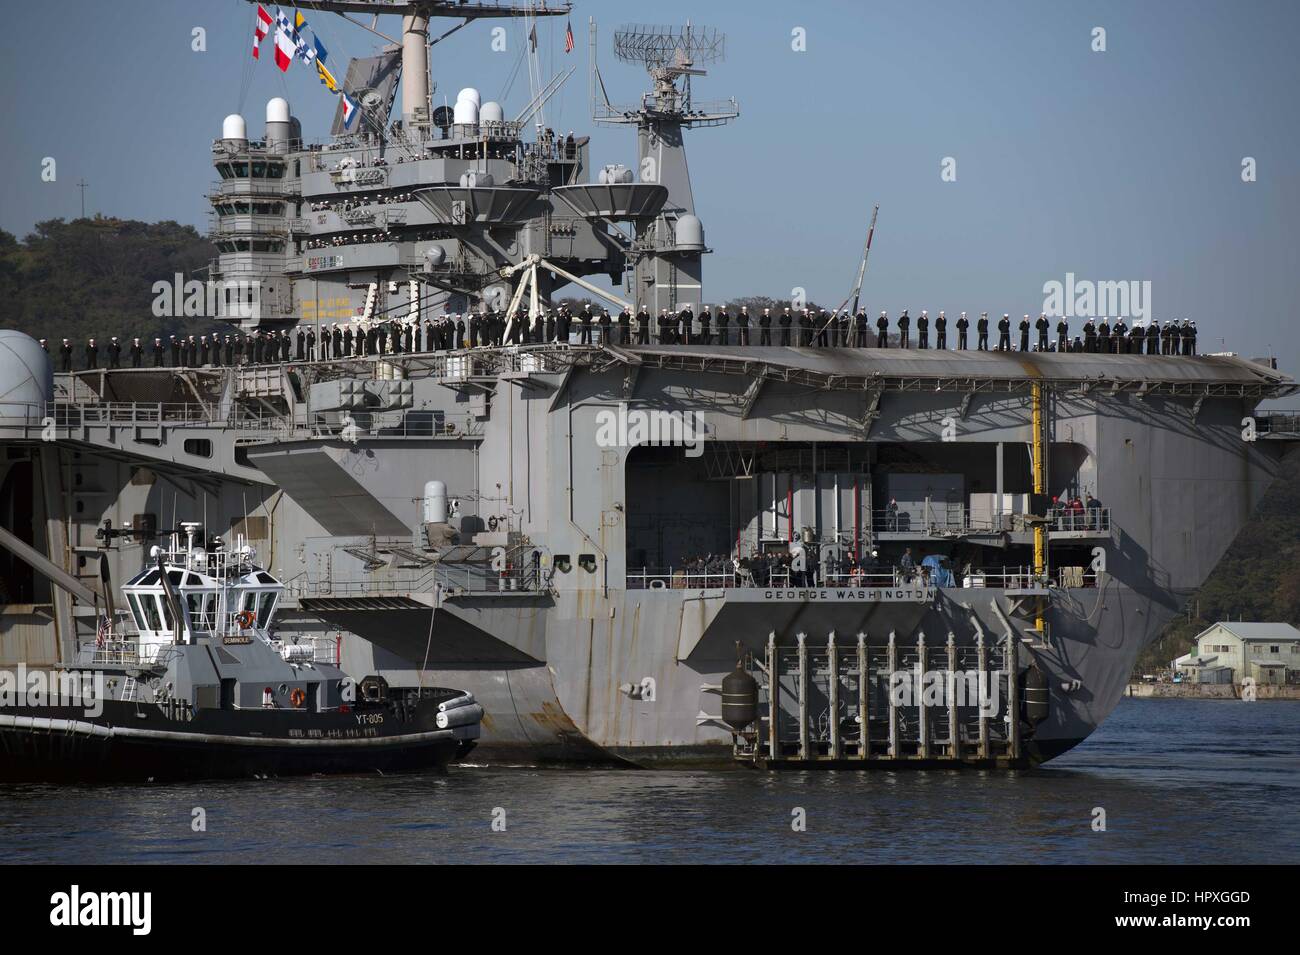 I marinai a bordo della Nimitz-class portaerei USS George Washington uomo le rotaie come la nave ritorna alla attività della flotta, Yokosuka, 20 novembre 2012. Immagine cortesia Amanda S. Kitchner/US Navy. Foto Stock